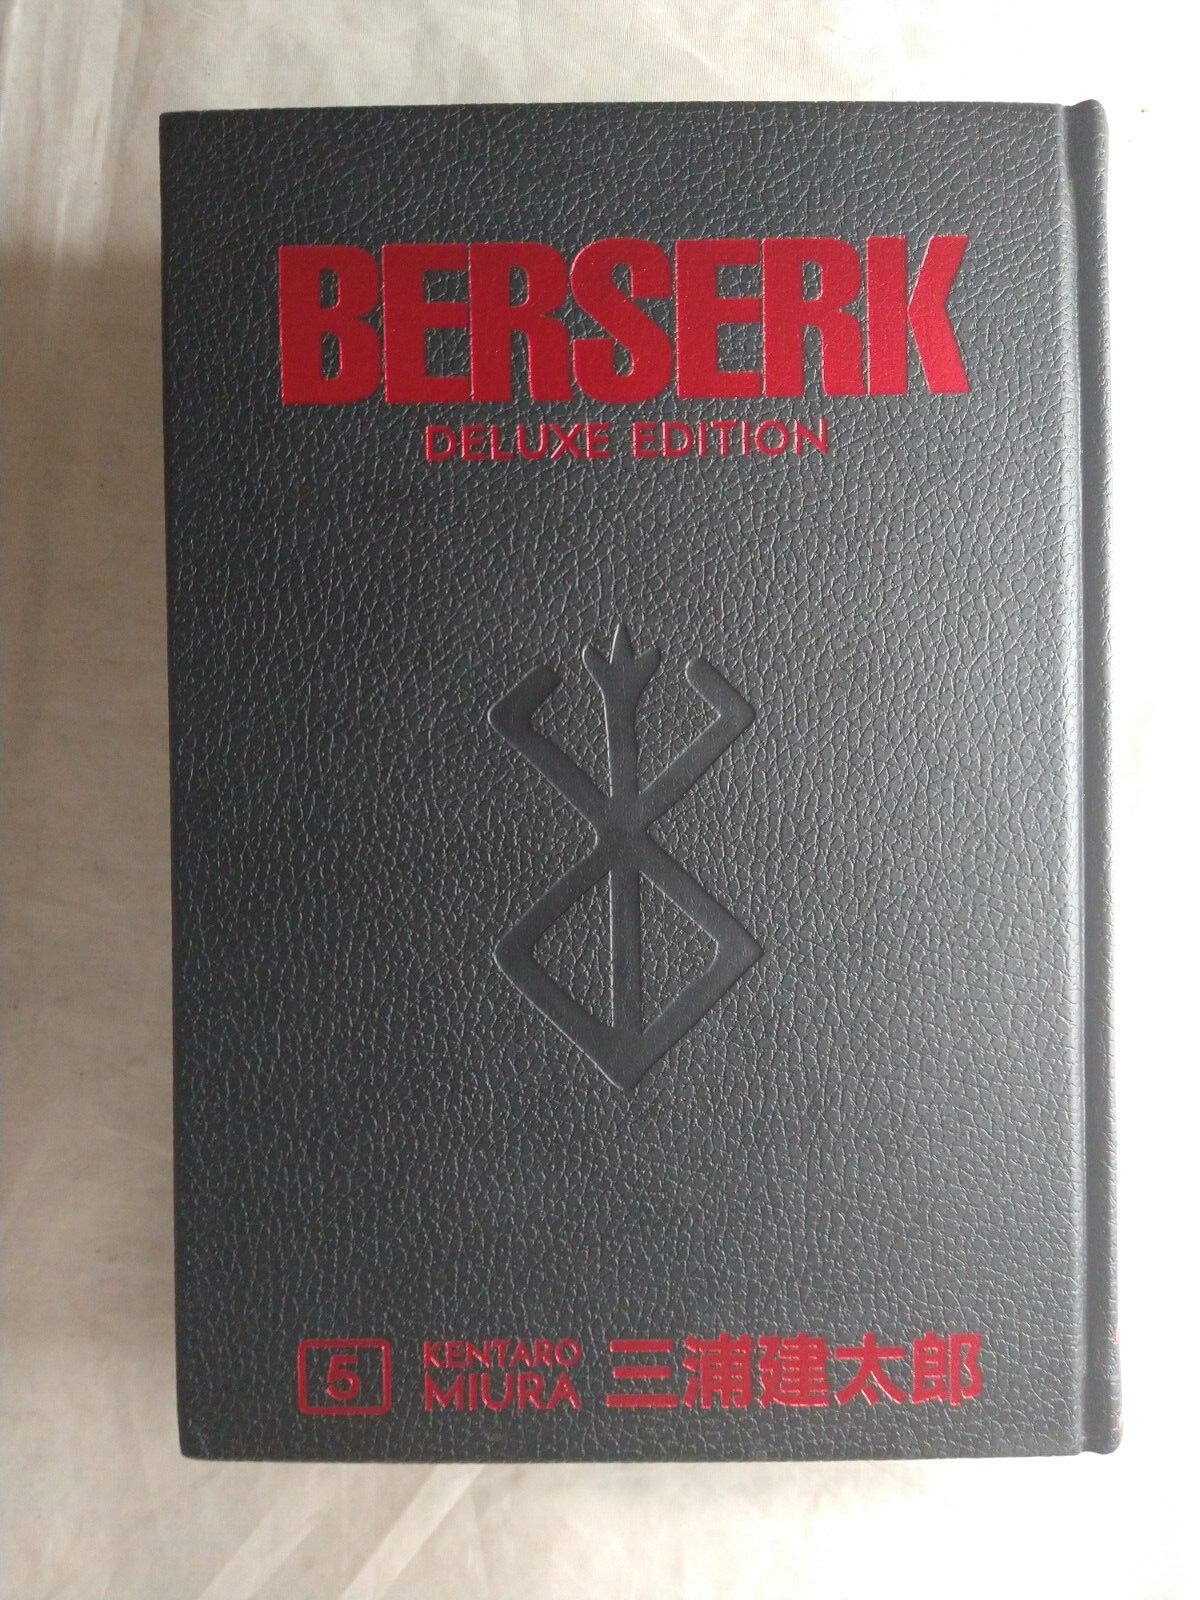 Berserk Deluxe Volume 5 Hardcover Kentaro Miura Dark Horse Comics